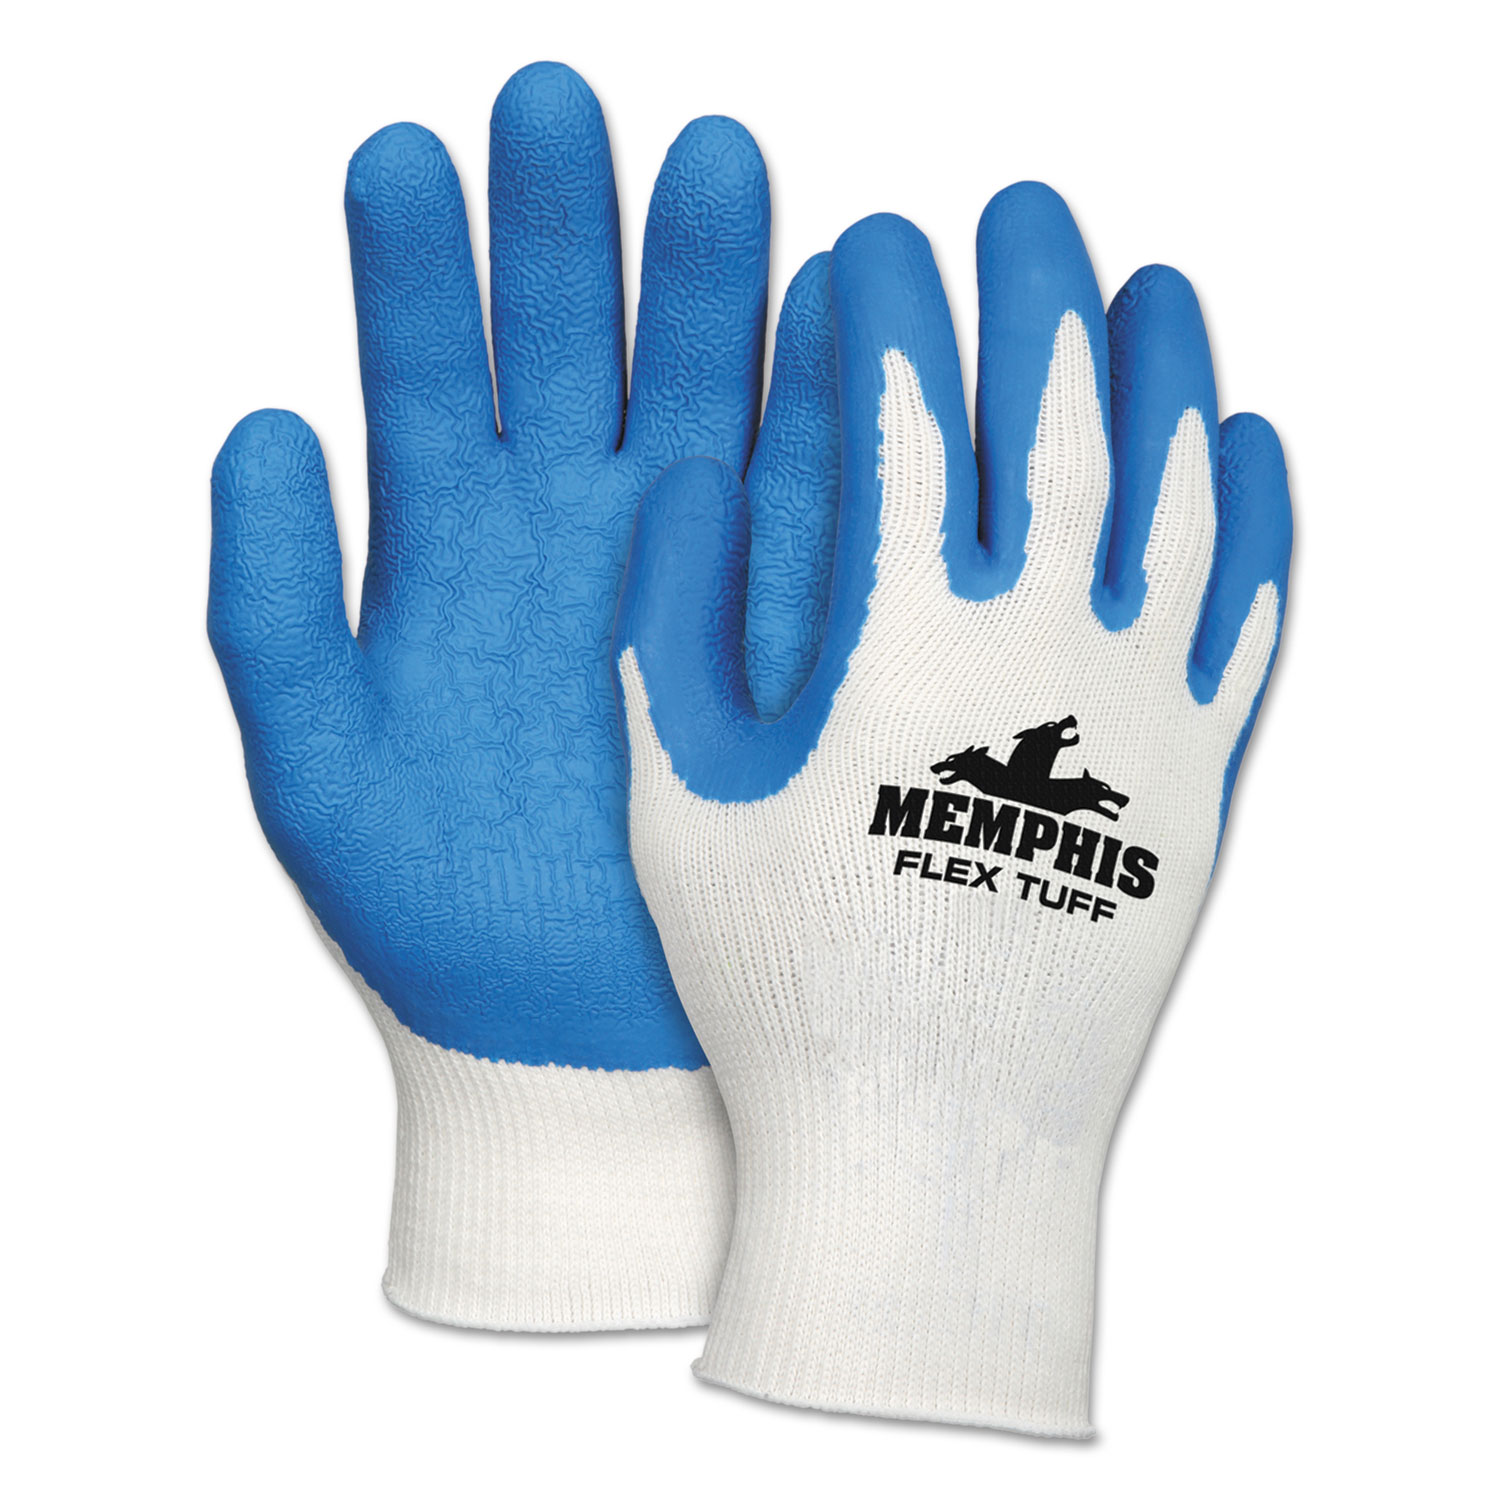 Flex Tuff Work Gloves, White/Blue, X-Large, 10 gauge, 1 Dozen